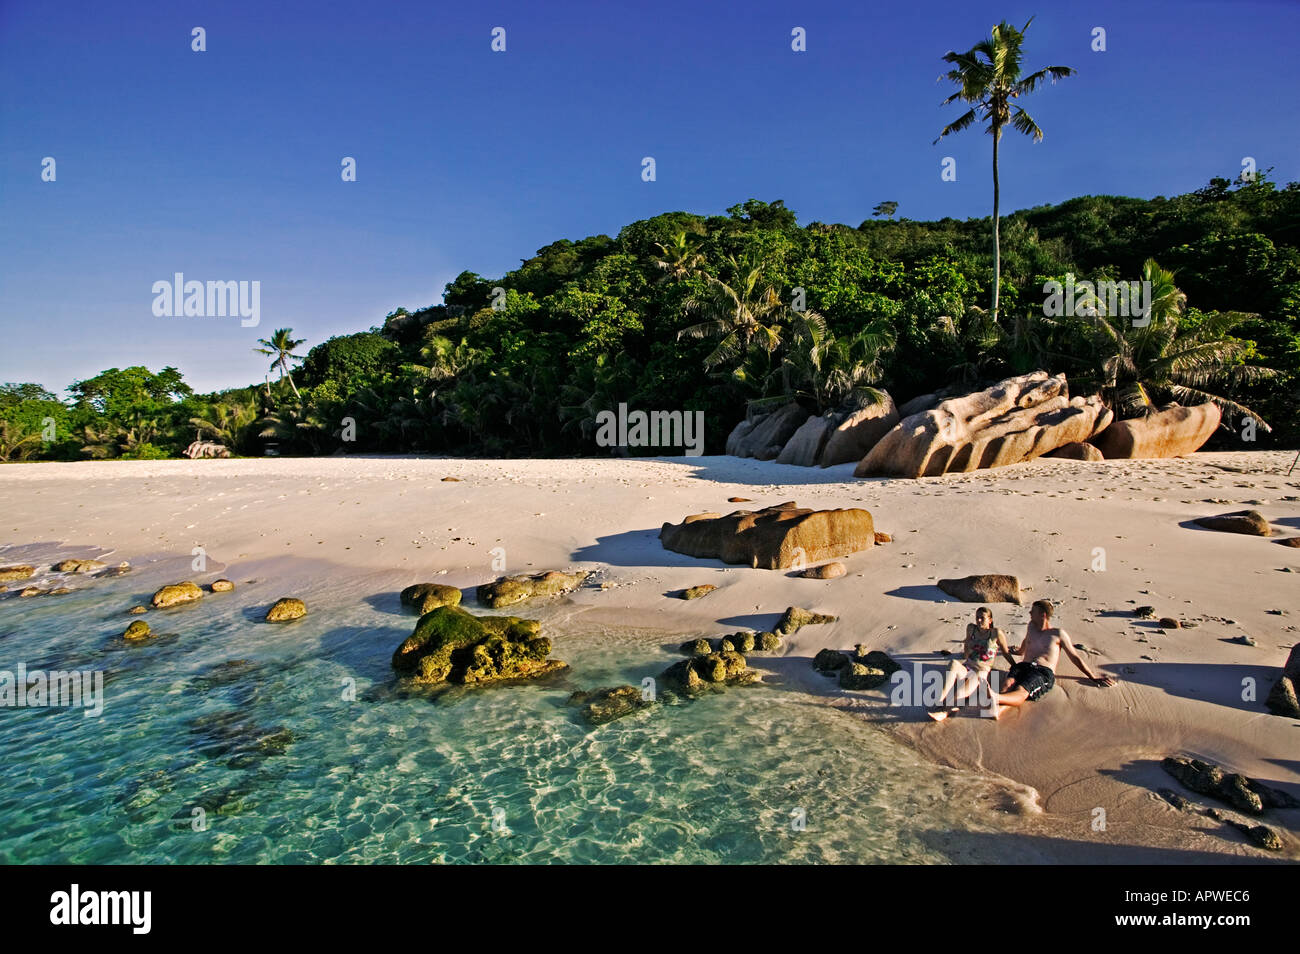 Paar am Strand Modell entspannen veröffentlicht Seychellen Cousine Island Stockfoto